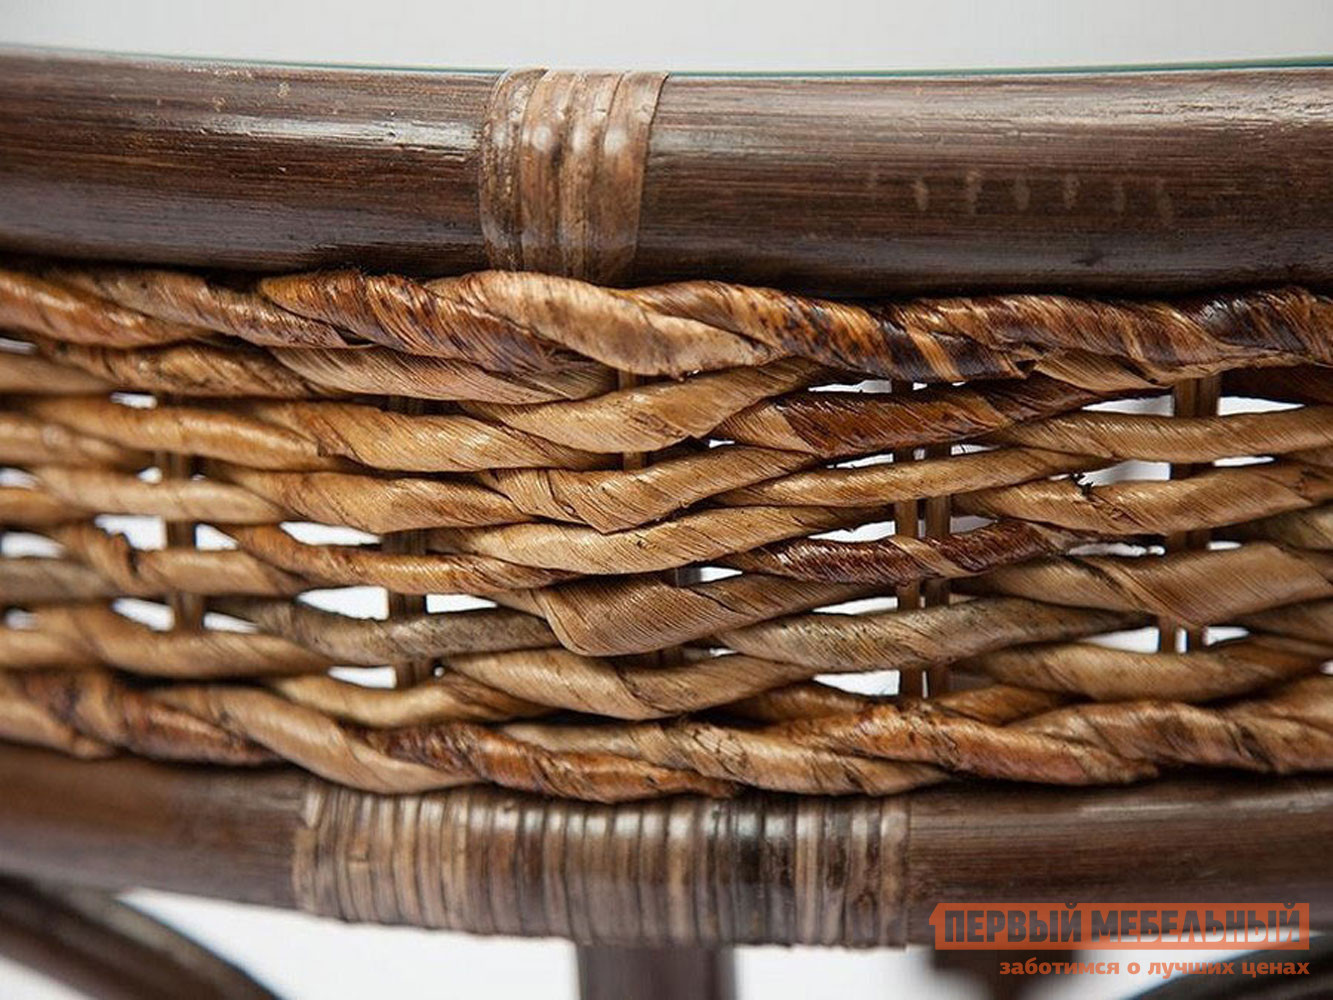 Комплект плетеной мебели  Мандалино 2 Грецкий орех / Банановые листья от Первый Мебельный